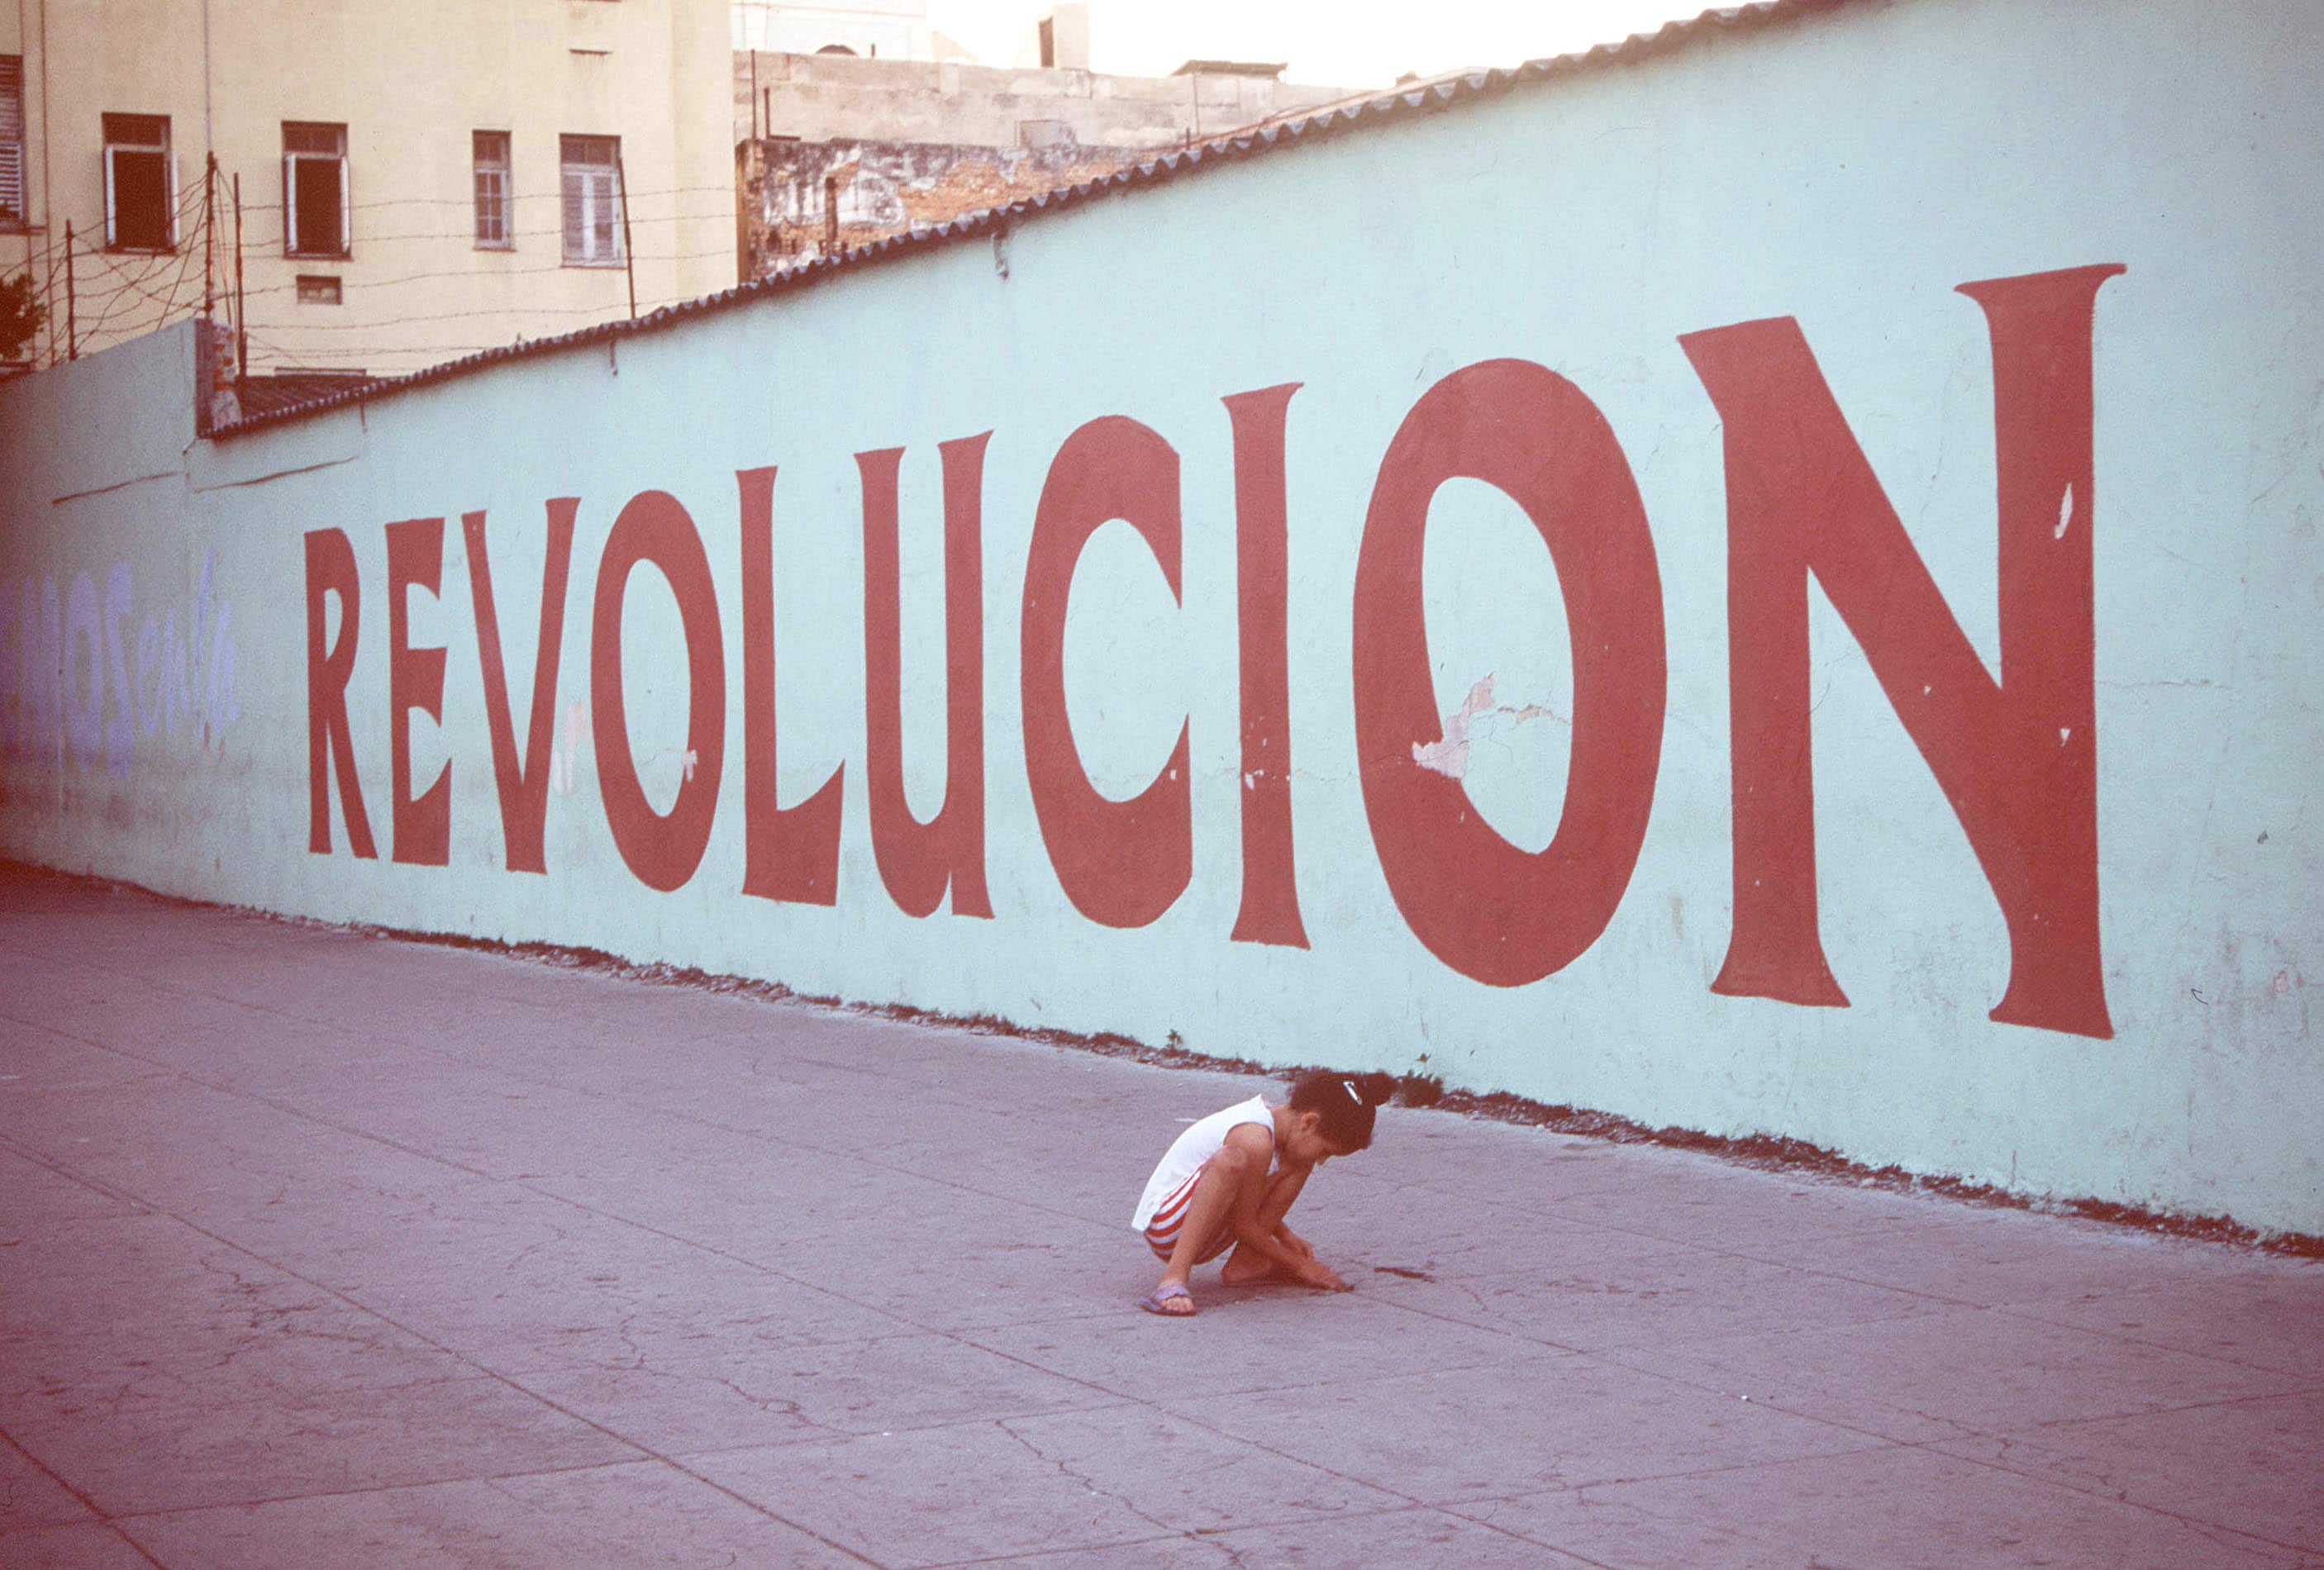 Santiago di Cuba, una scritta che ricorda la rivoluzione del 1958-1959